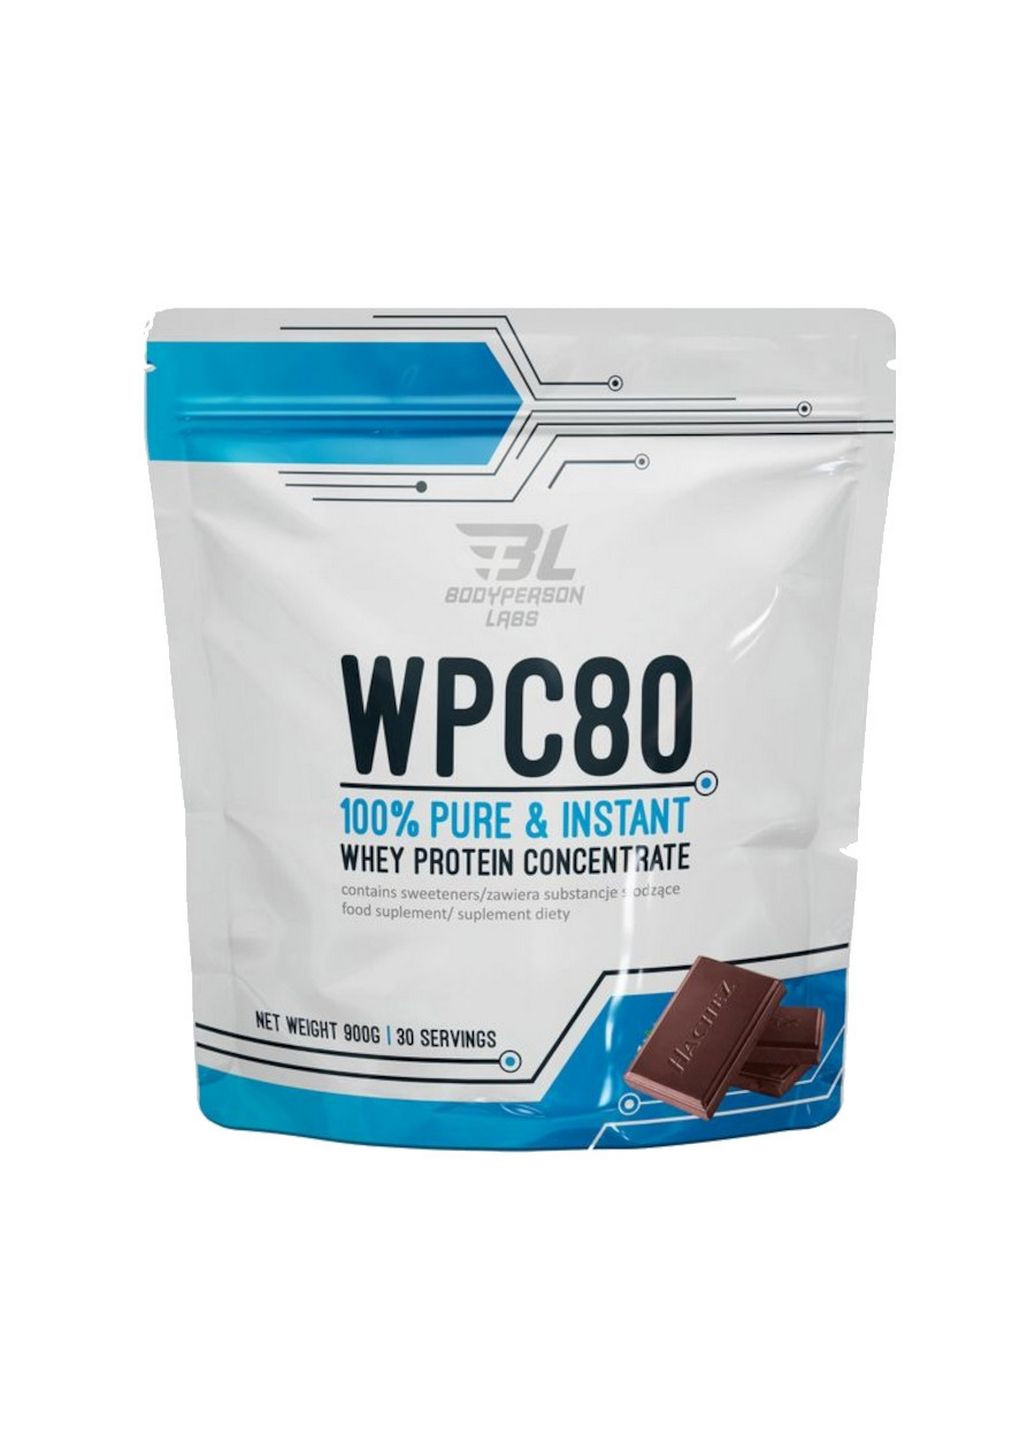 Протеин Labs WPC80, 900 грамм Шоколад Bodyperson Labs (293417139)